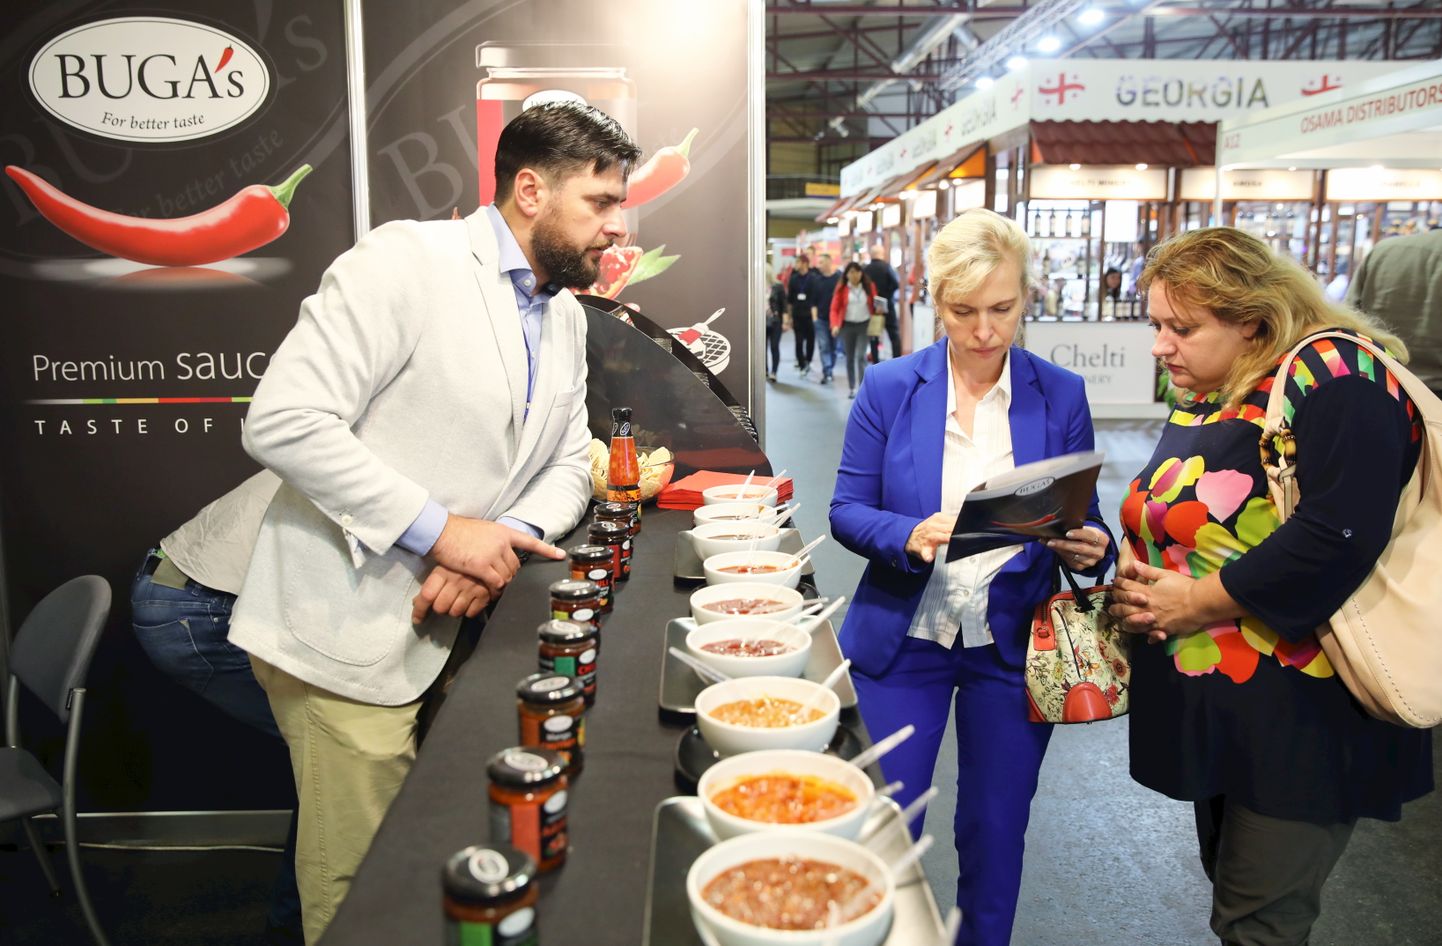 Izstāde "Riga Food 2019" starptausikajā izstāžu centrā "Ķīpsala".